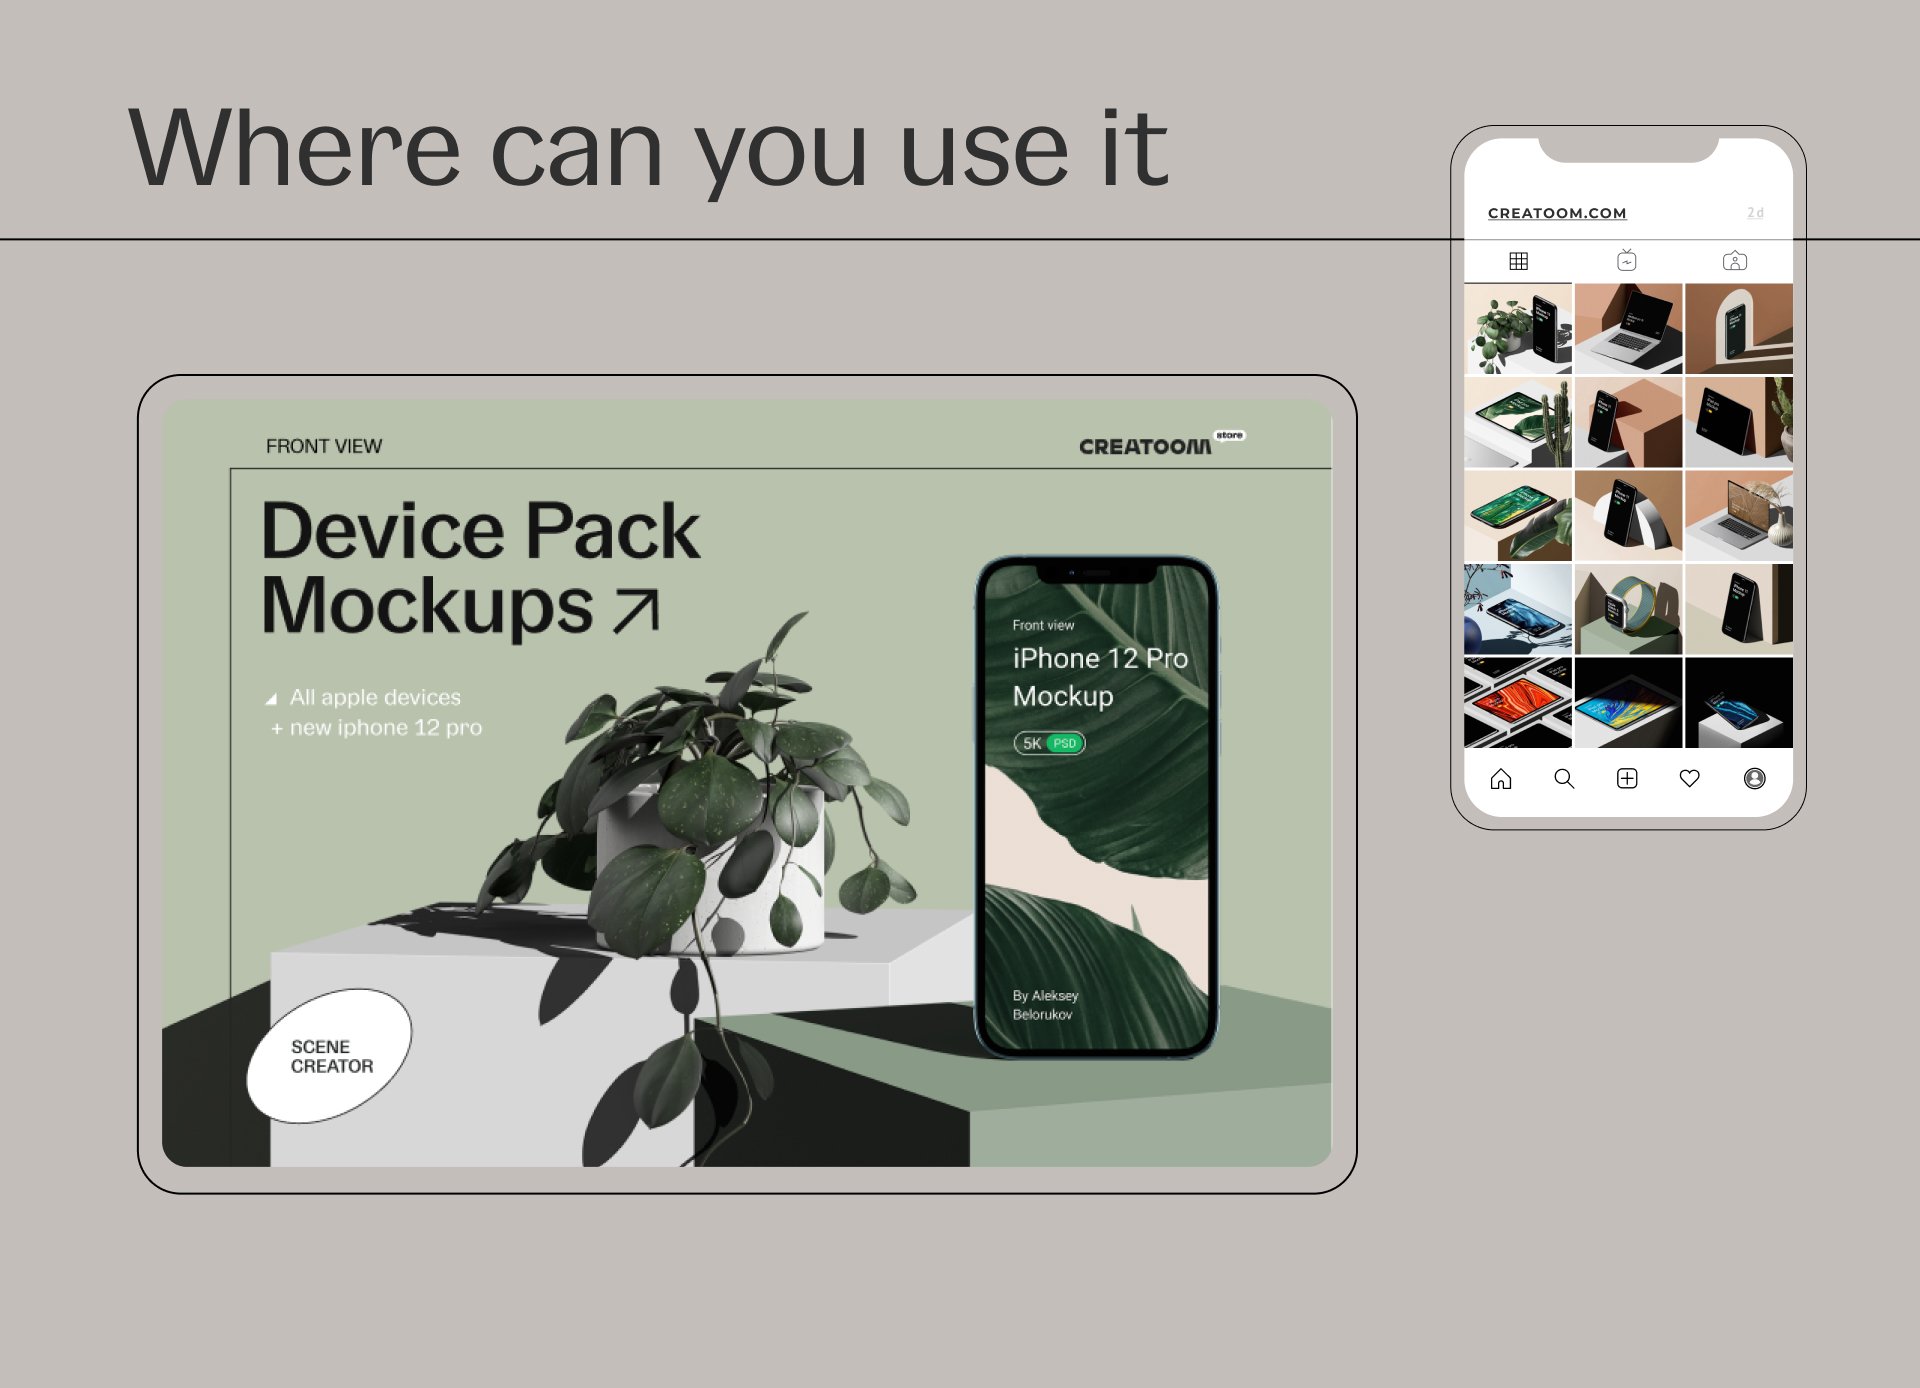 15款网页APP界面设计苹果设备前视屏幕演示手机平板电脑样机 Device Pack Mockups – Front View